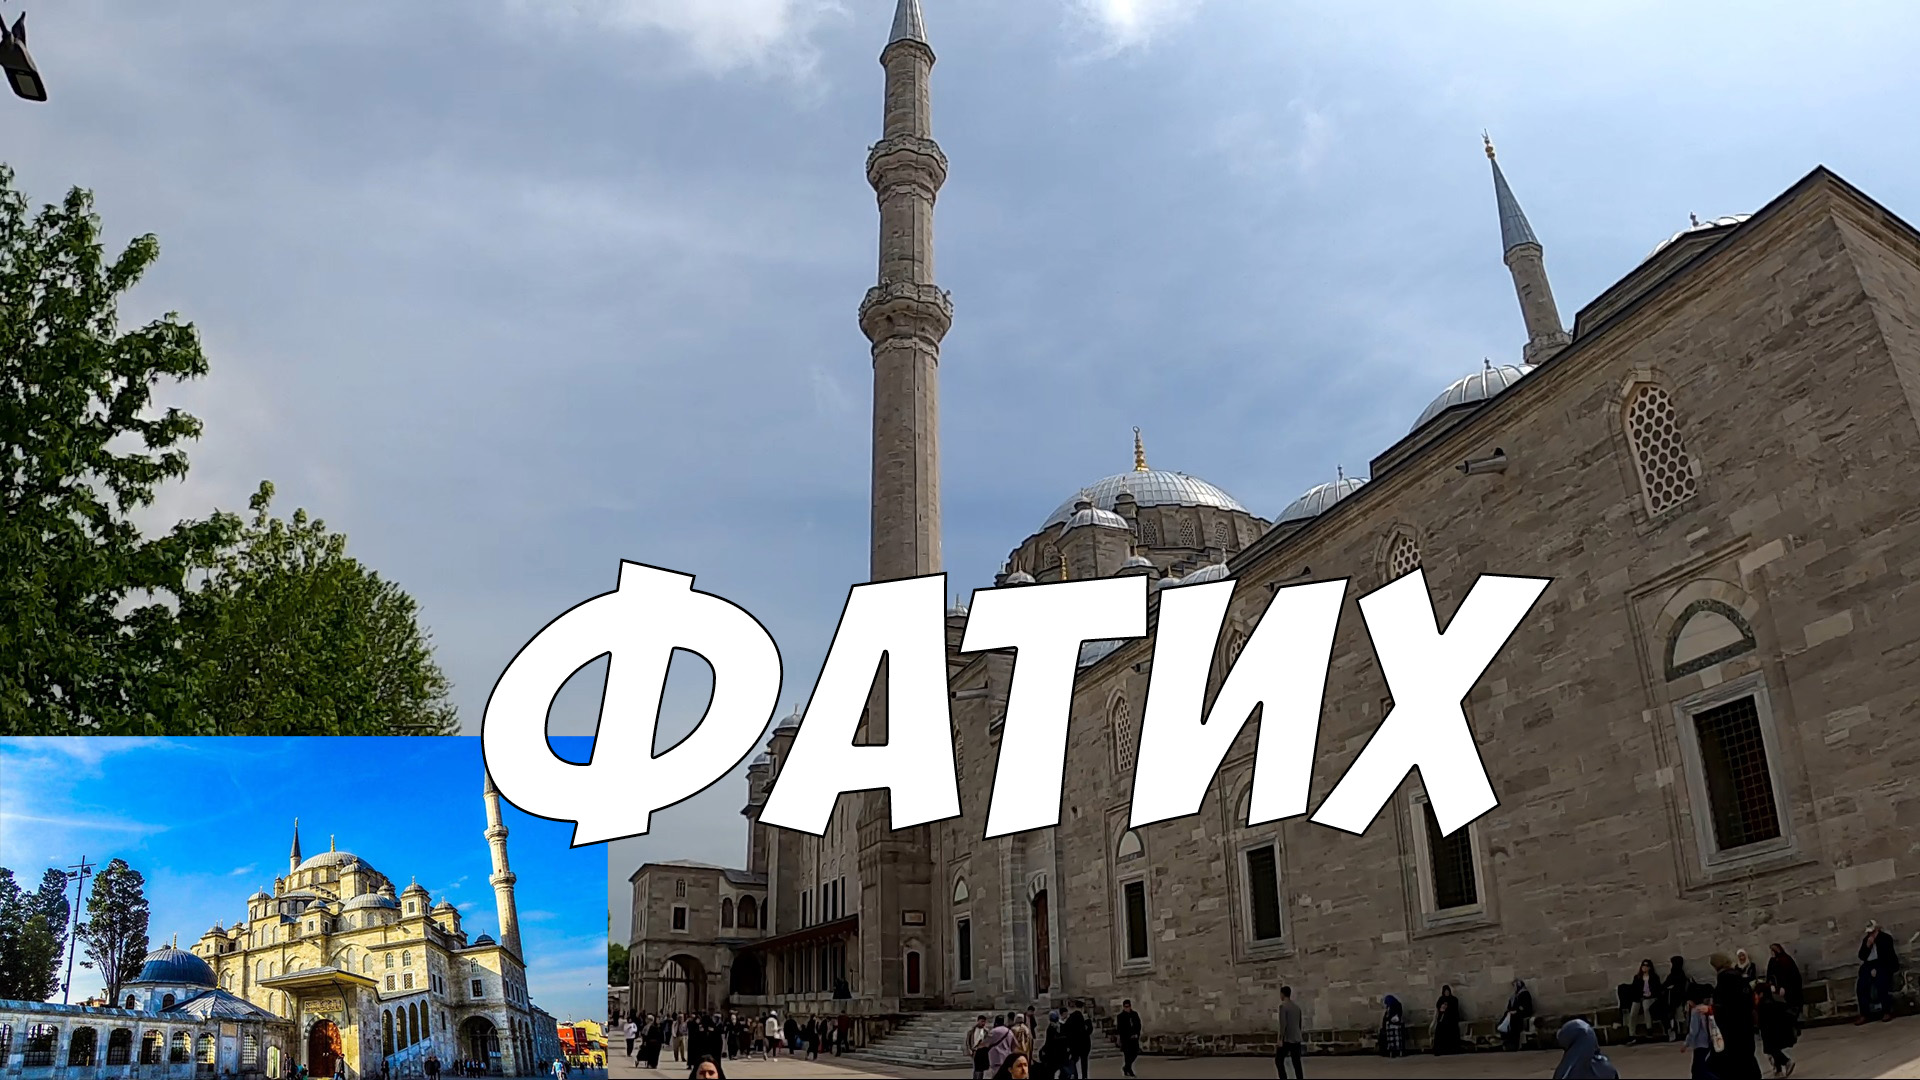 Достопримечательности Стамбула - мечеть Фатих - в честь завоевателя Константинополя